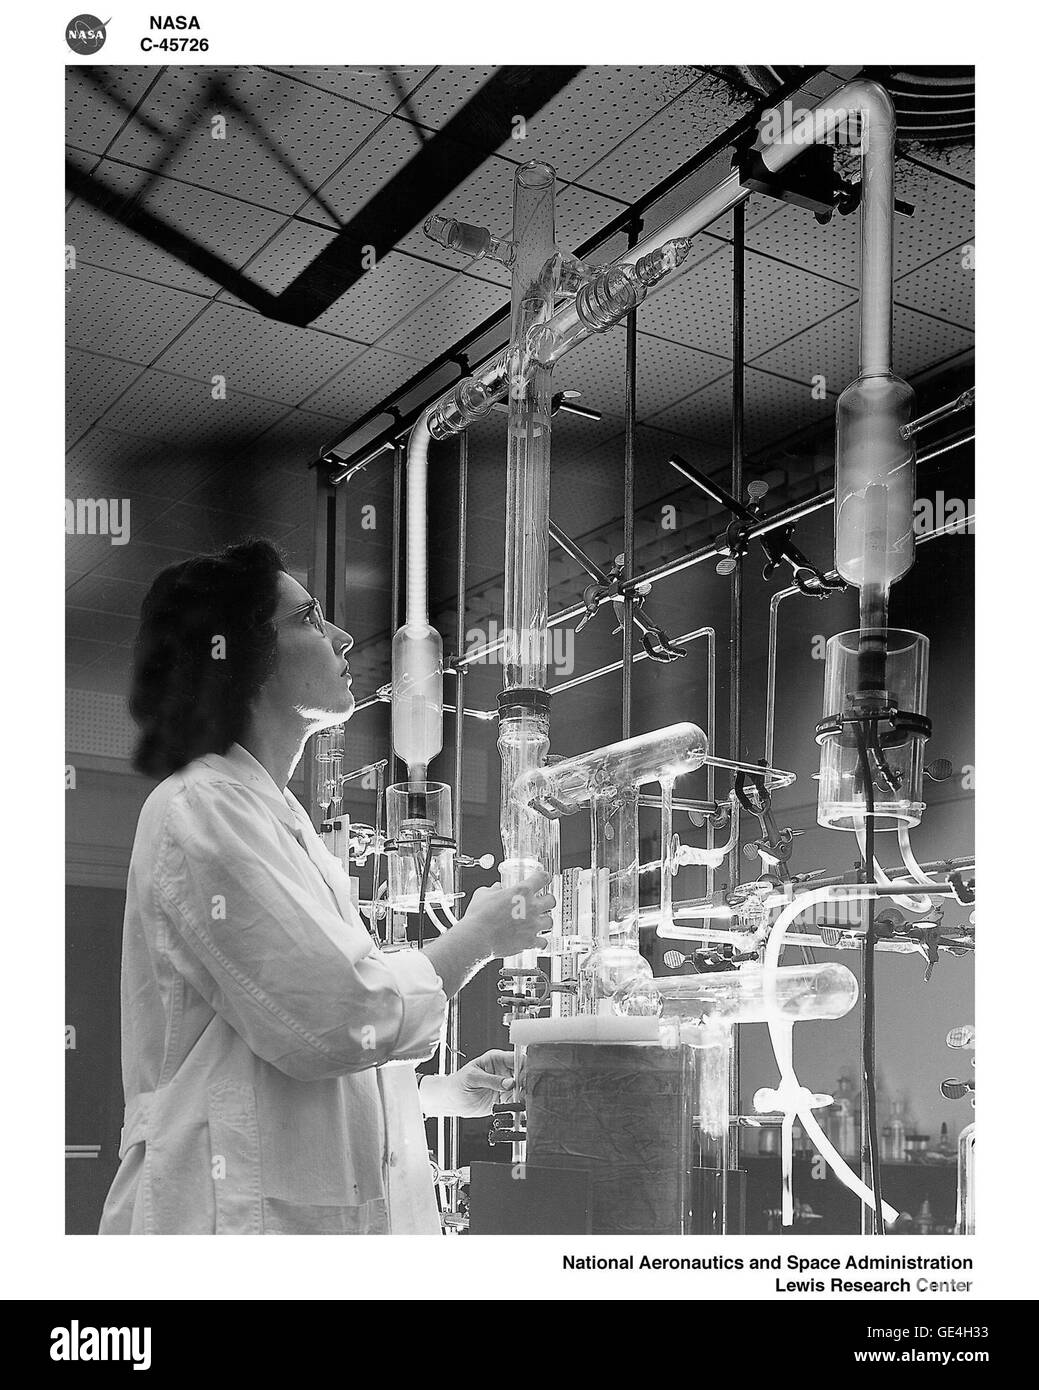 (14 August 1957) Einer der seltenen Frauen Physiker am NASA Lewis Research Center, arbeitet an einer atomaren Labor-Experiment, die eine Gas mit niedrigem Druck durch eine Hochspannungs-Entladung geschoben Bild-Nr.: C-1957-45726 Stockfoto